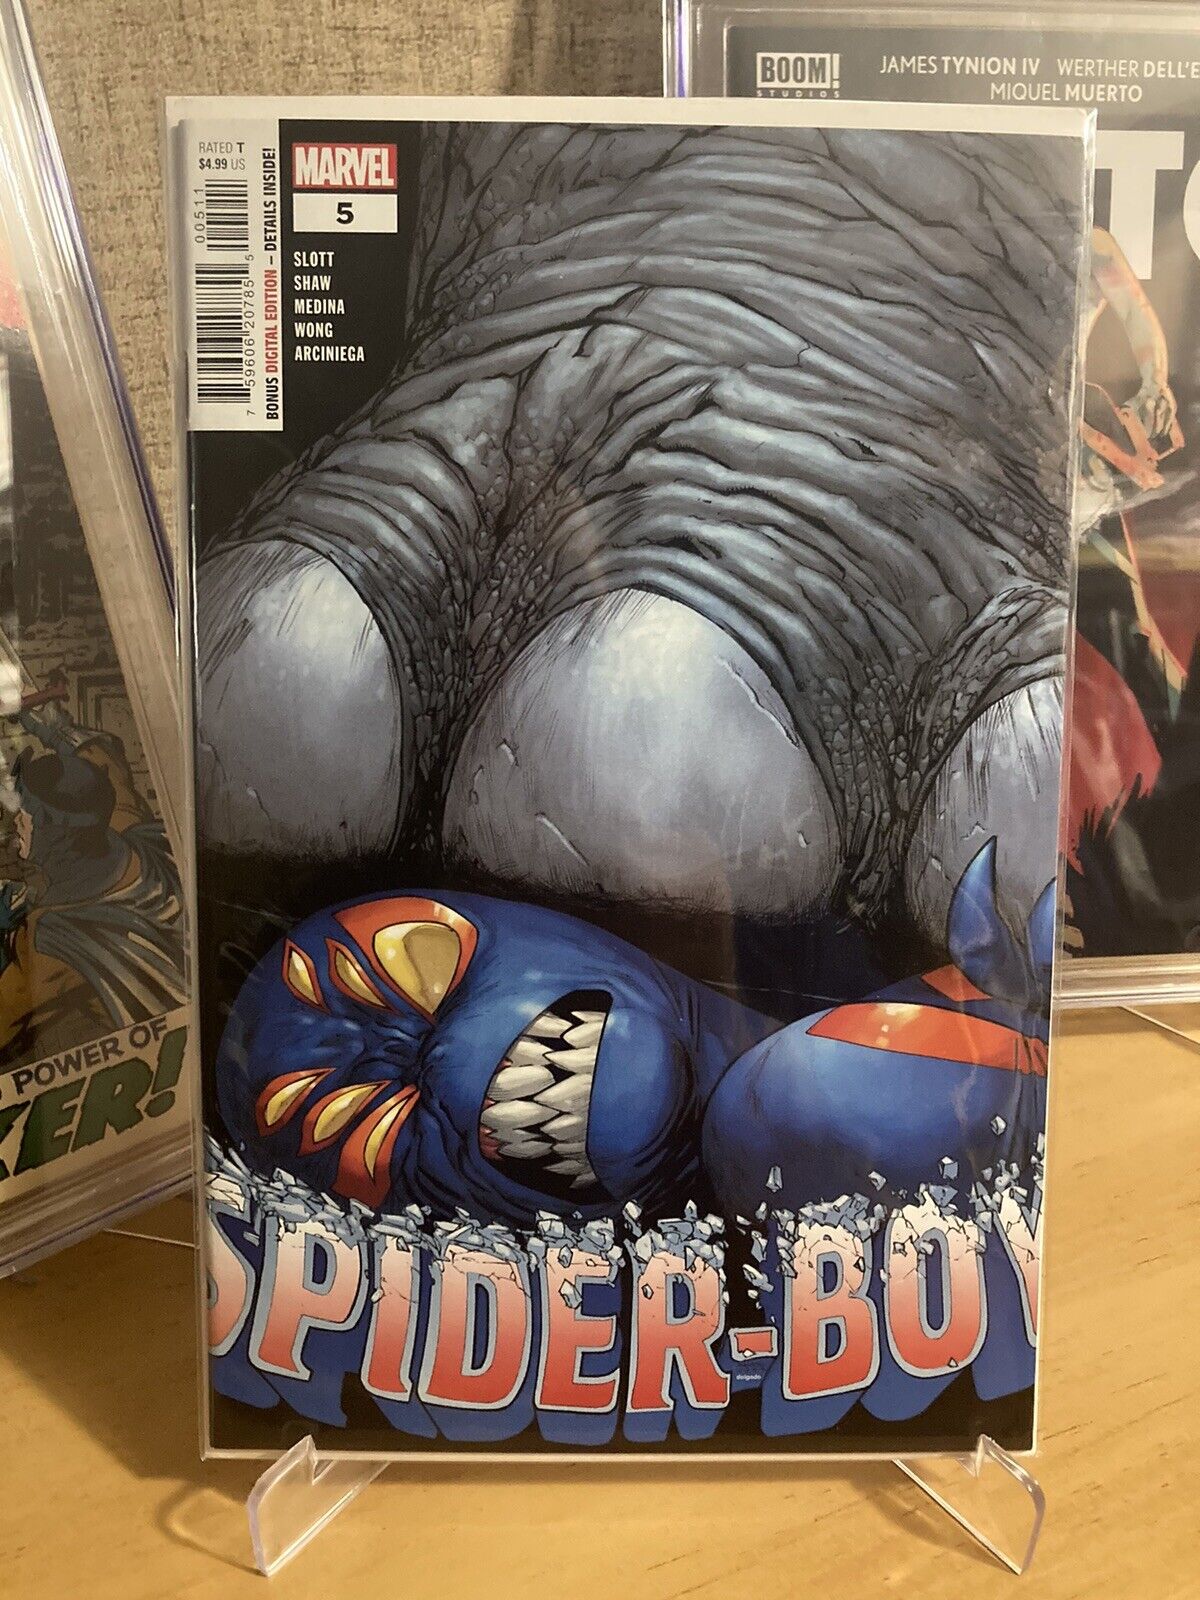 Spider-Boy #5